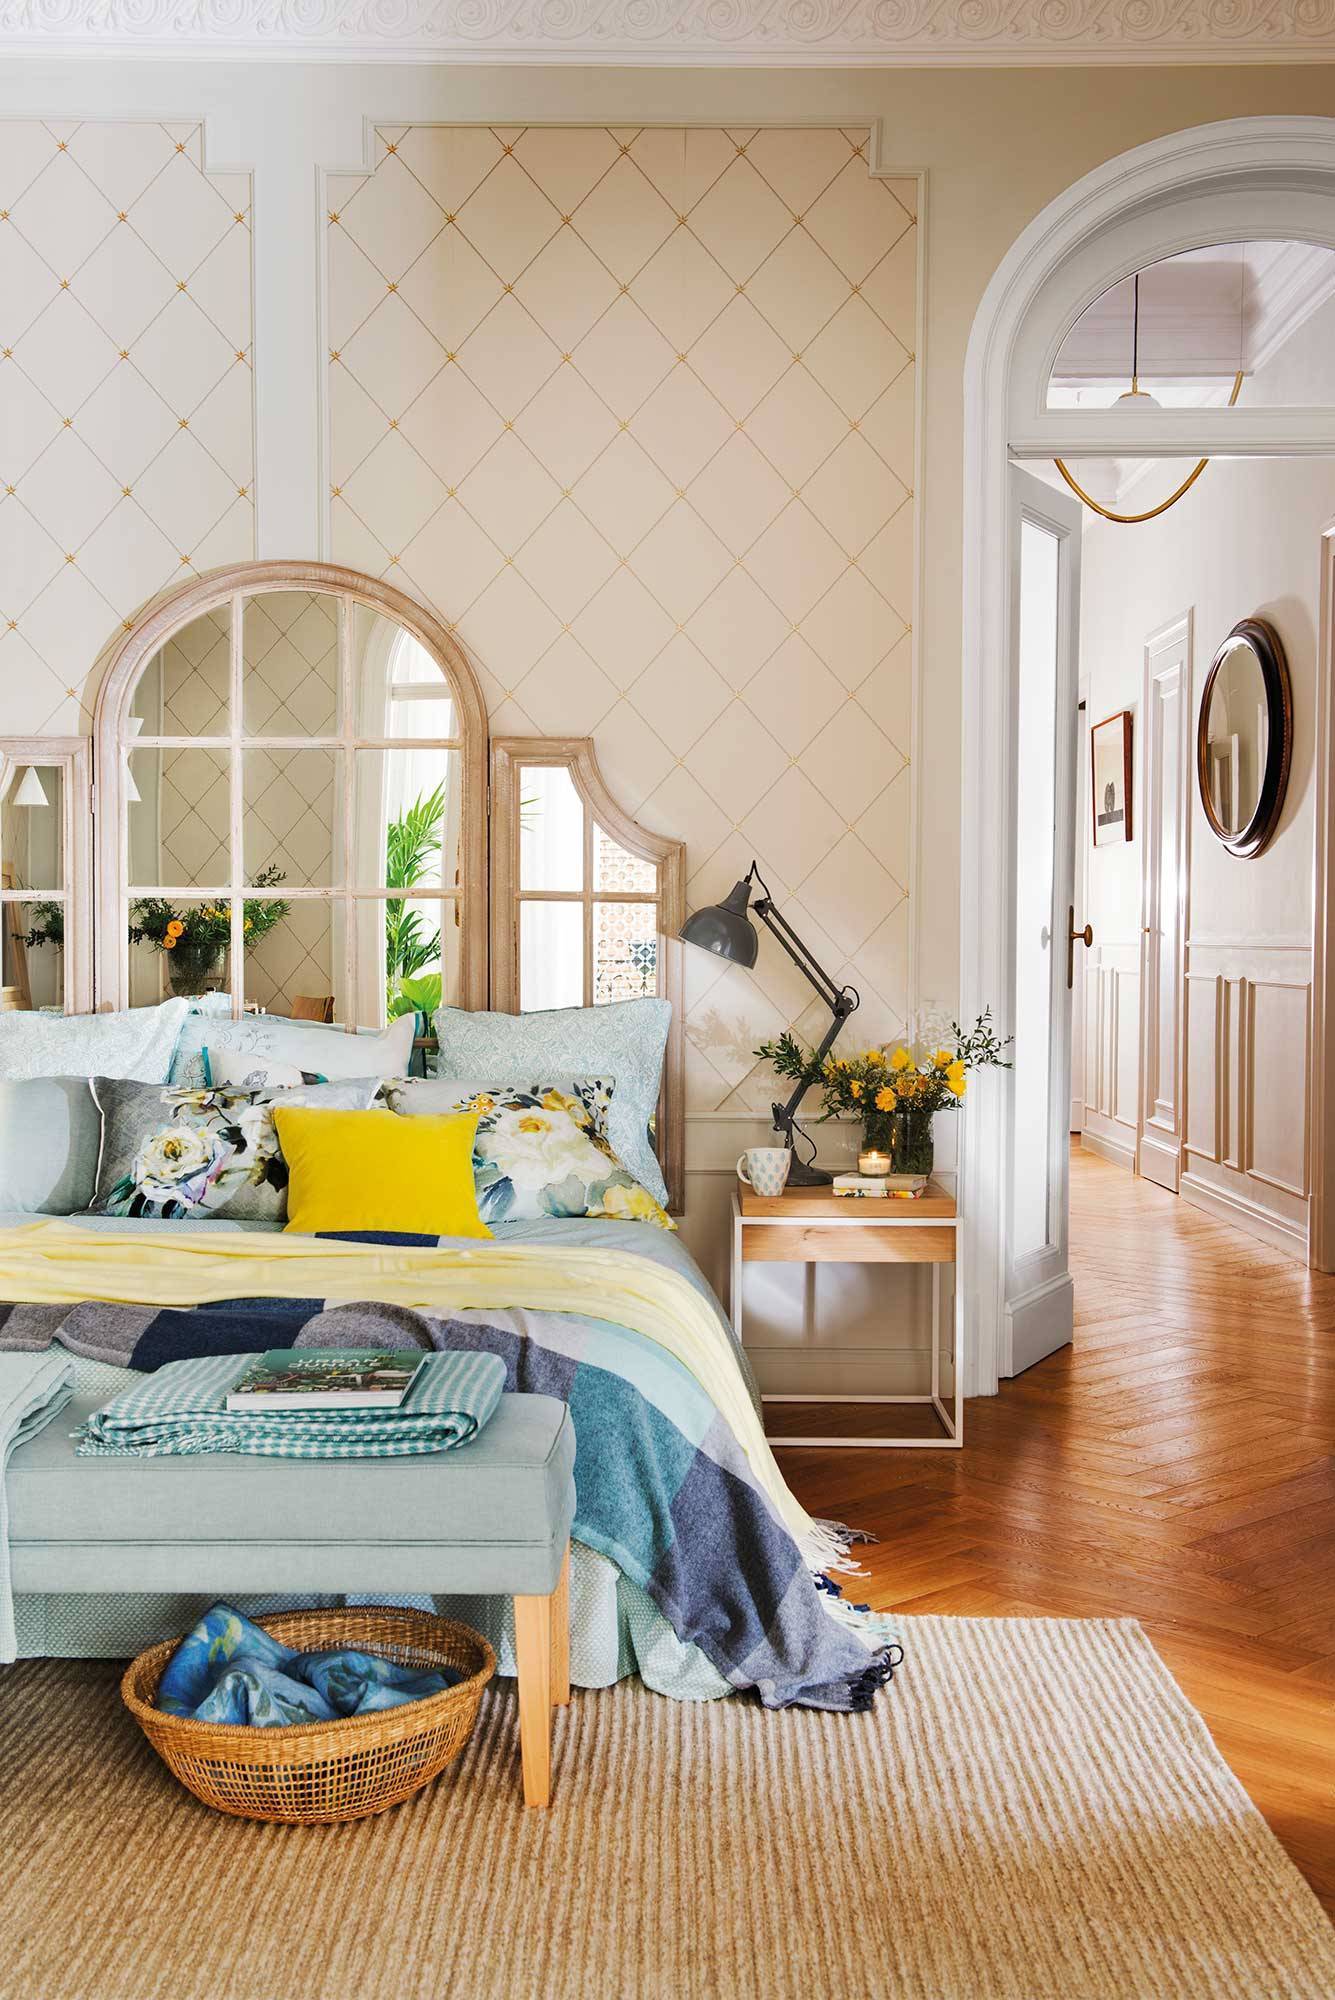 Dormitorio romántico con papel pintado de rombos y cabecero tríptico de espejos.